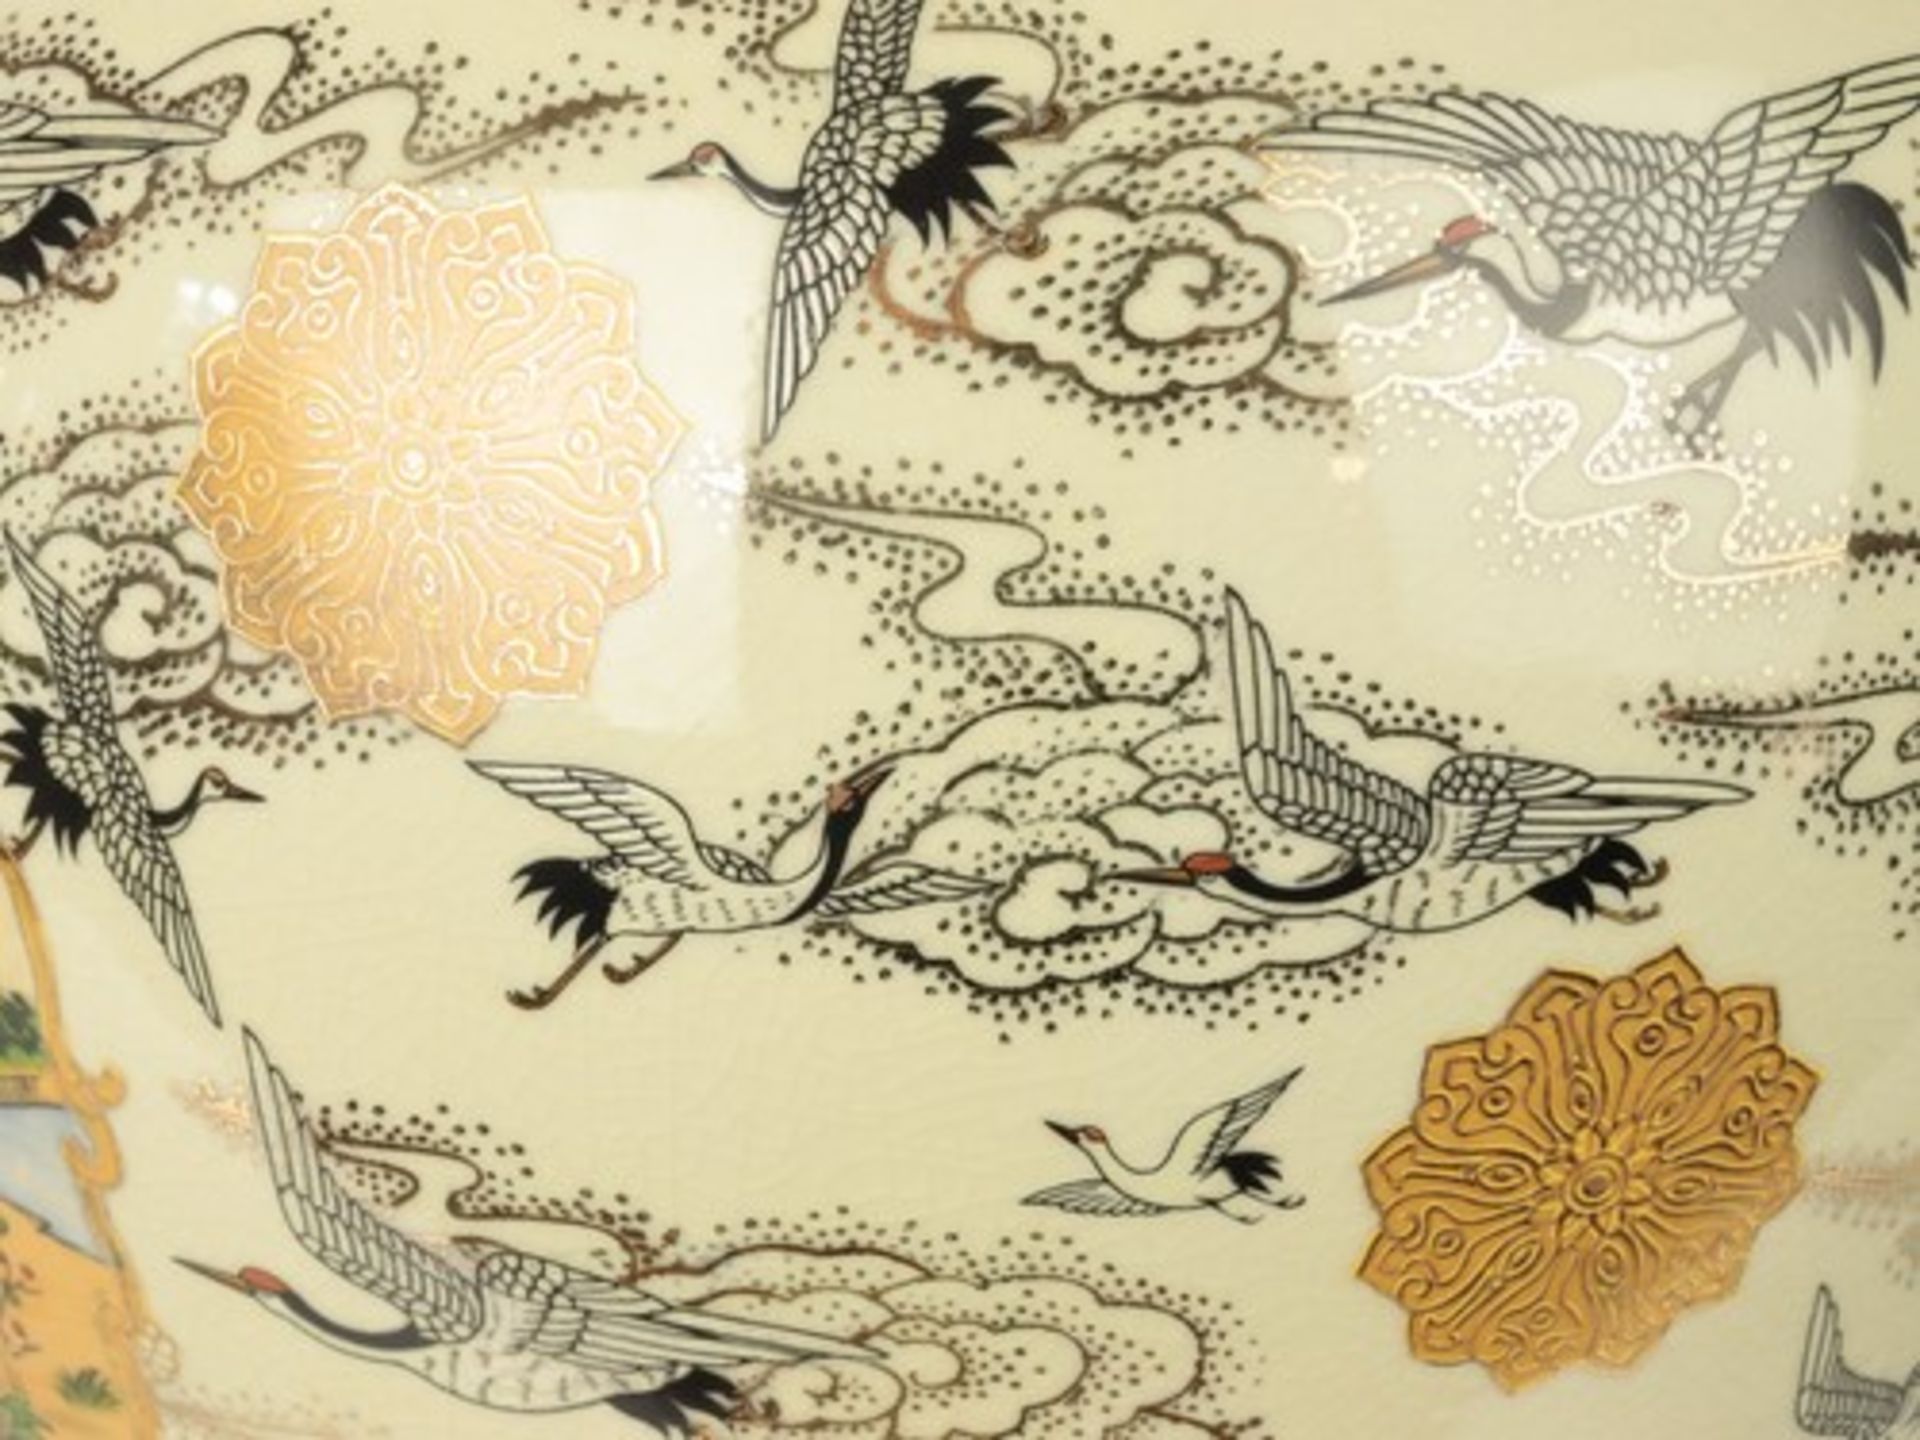 Fischbowlrote Marke, crown porcelin, heller Scherben, gebauchte Form, umlaufend polychromer - Bild 4 aus 7